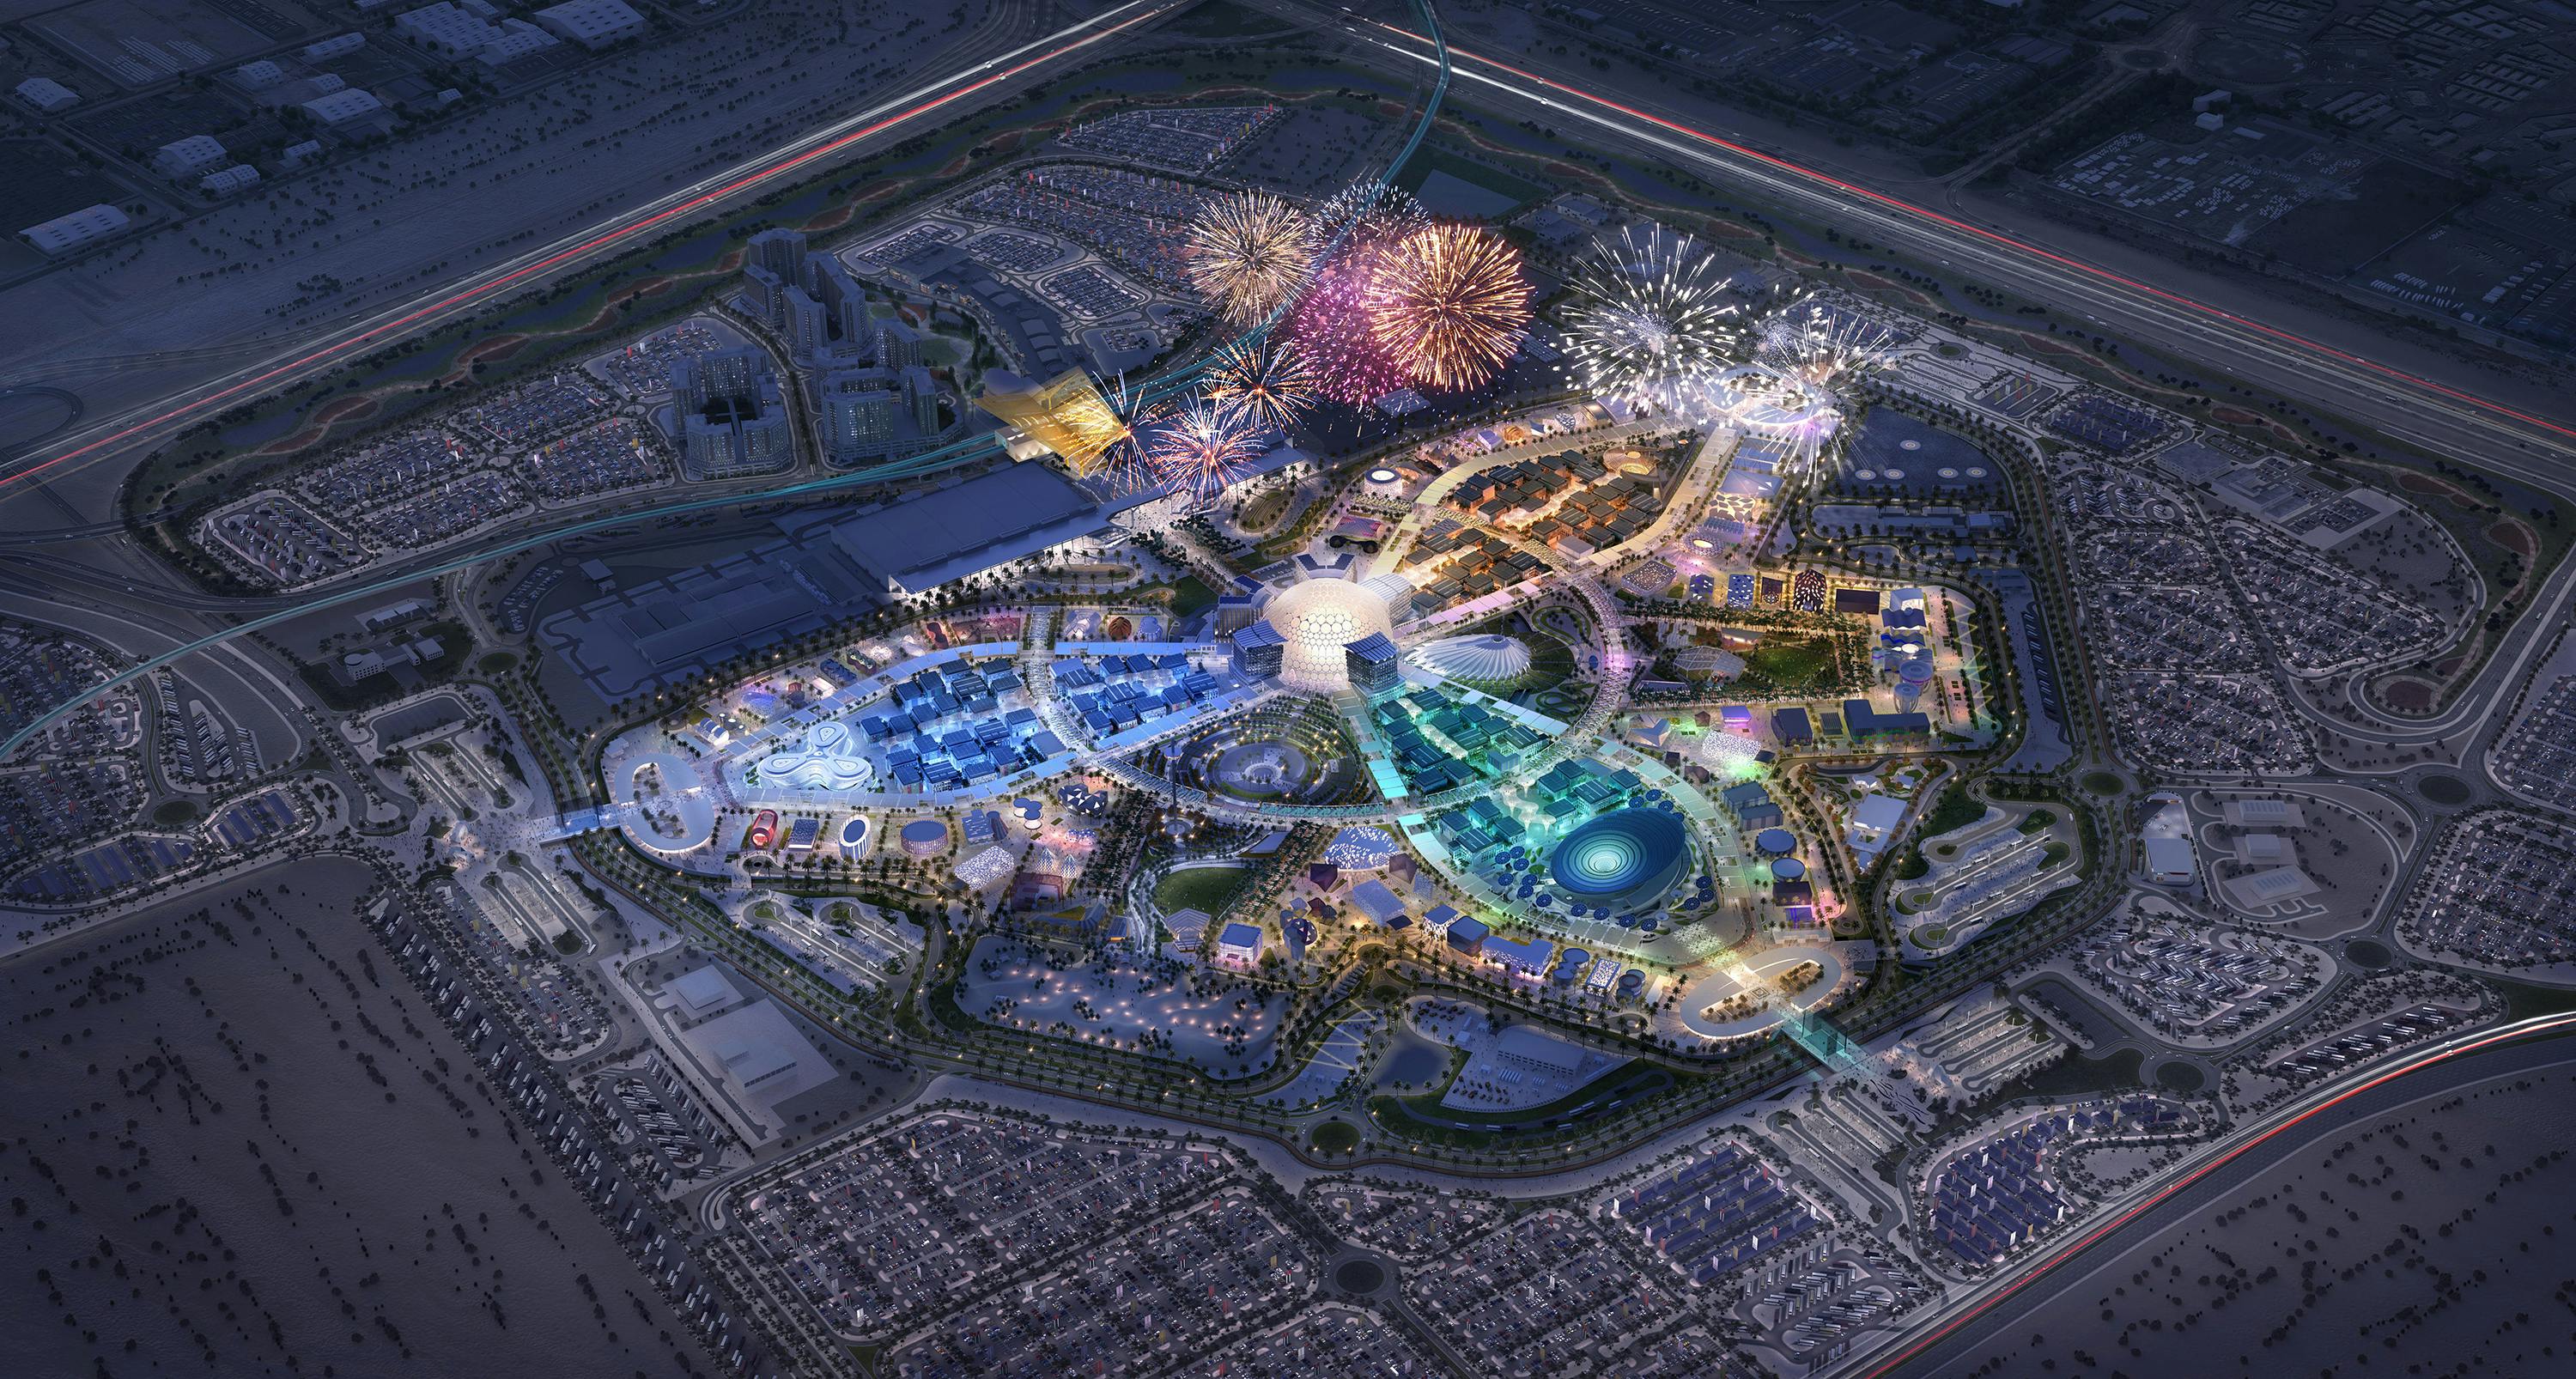 Expo Dubaï 2020